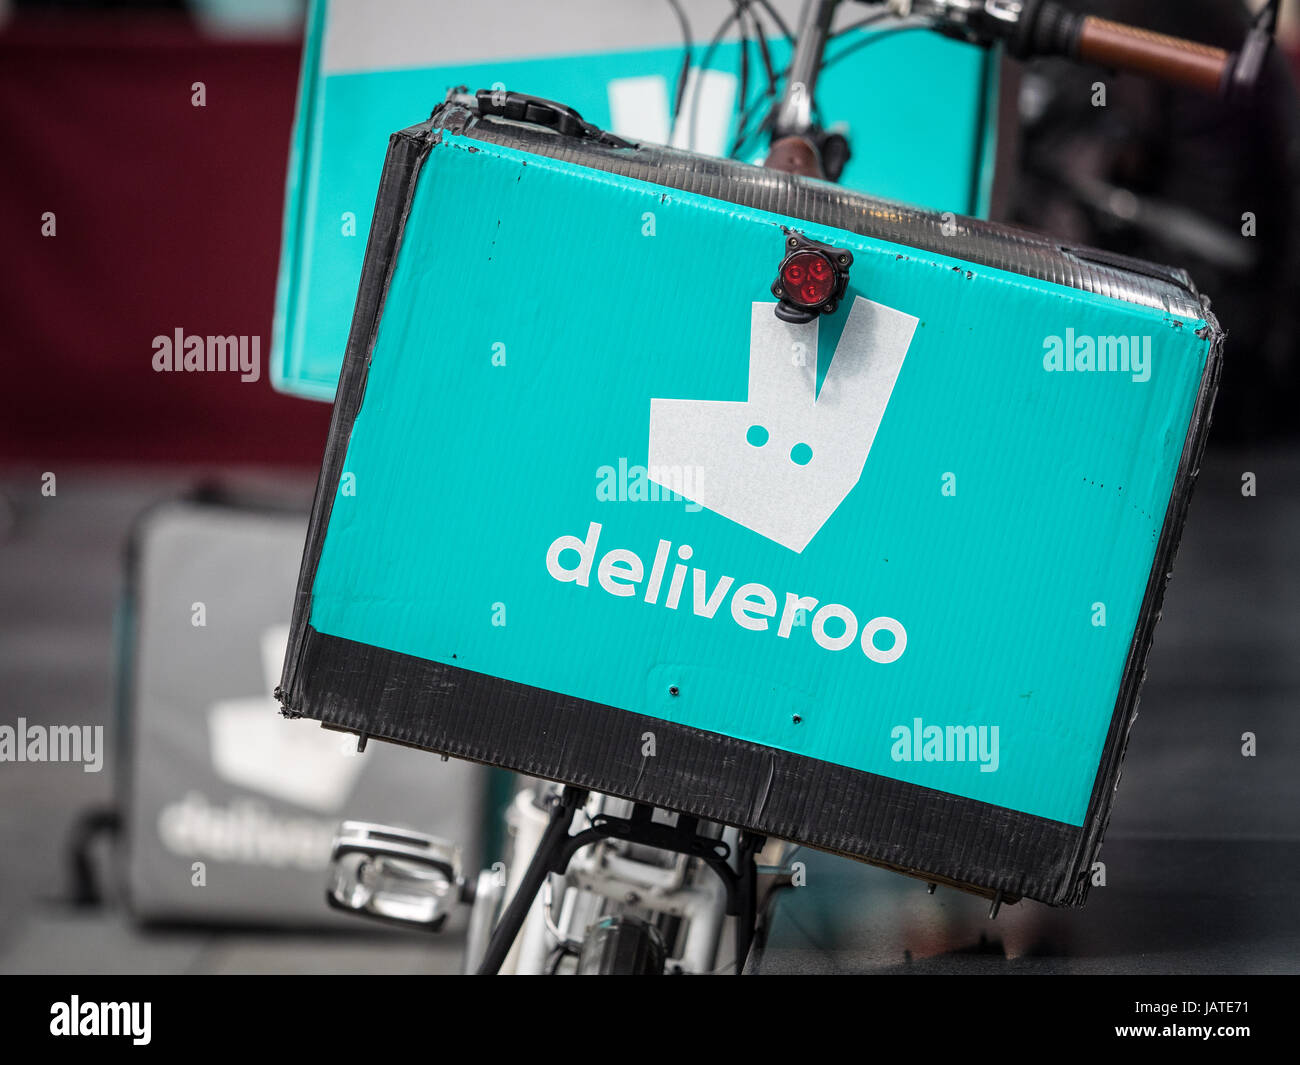 La entrega de alimentos Deliveroo bikes en Spitalfields Market de Londres. Deliveroo está compitiendo con Uber come en el lucrativo mercado de entrega de alimentos Foto de stock